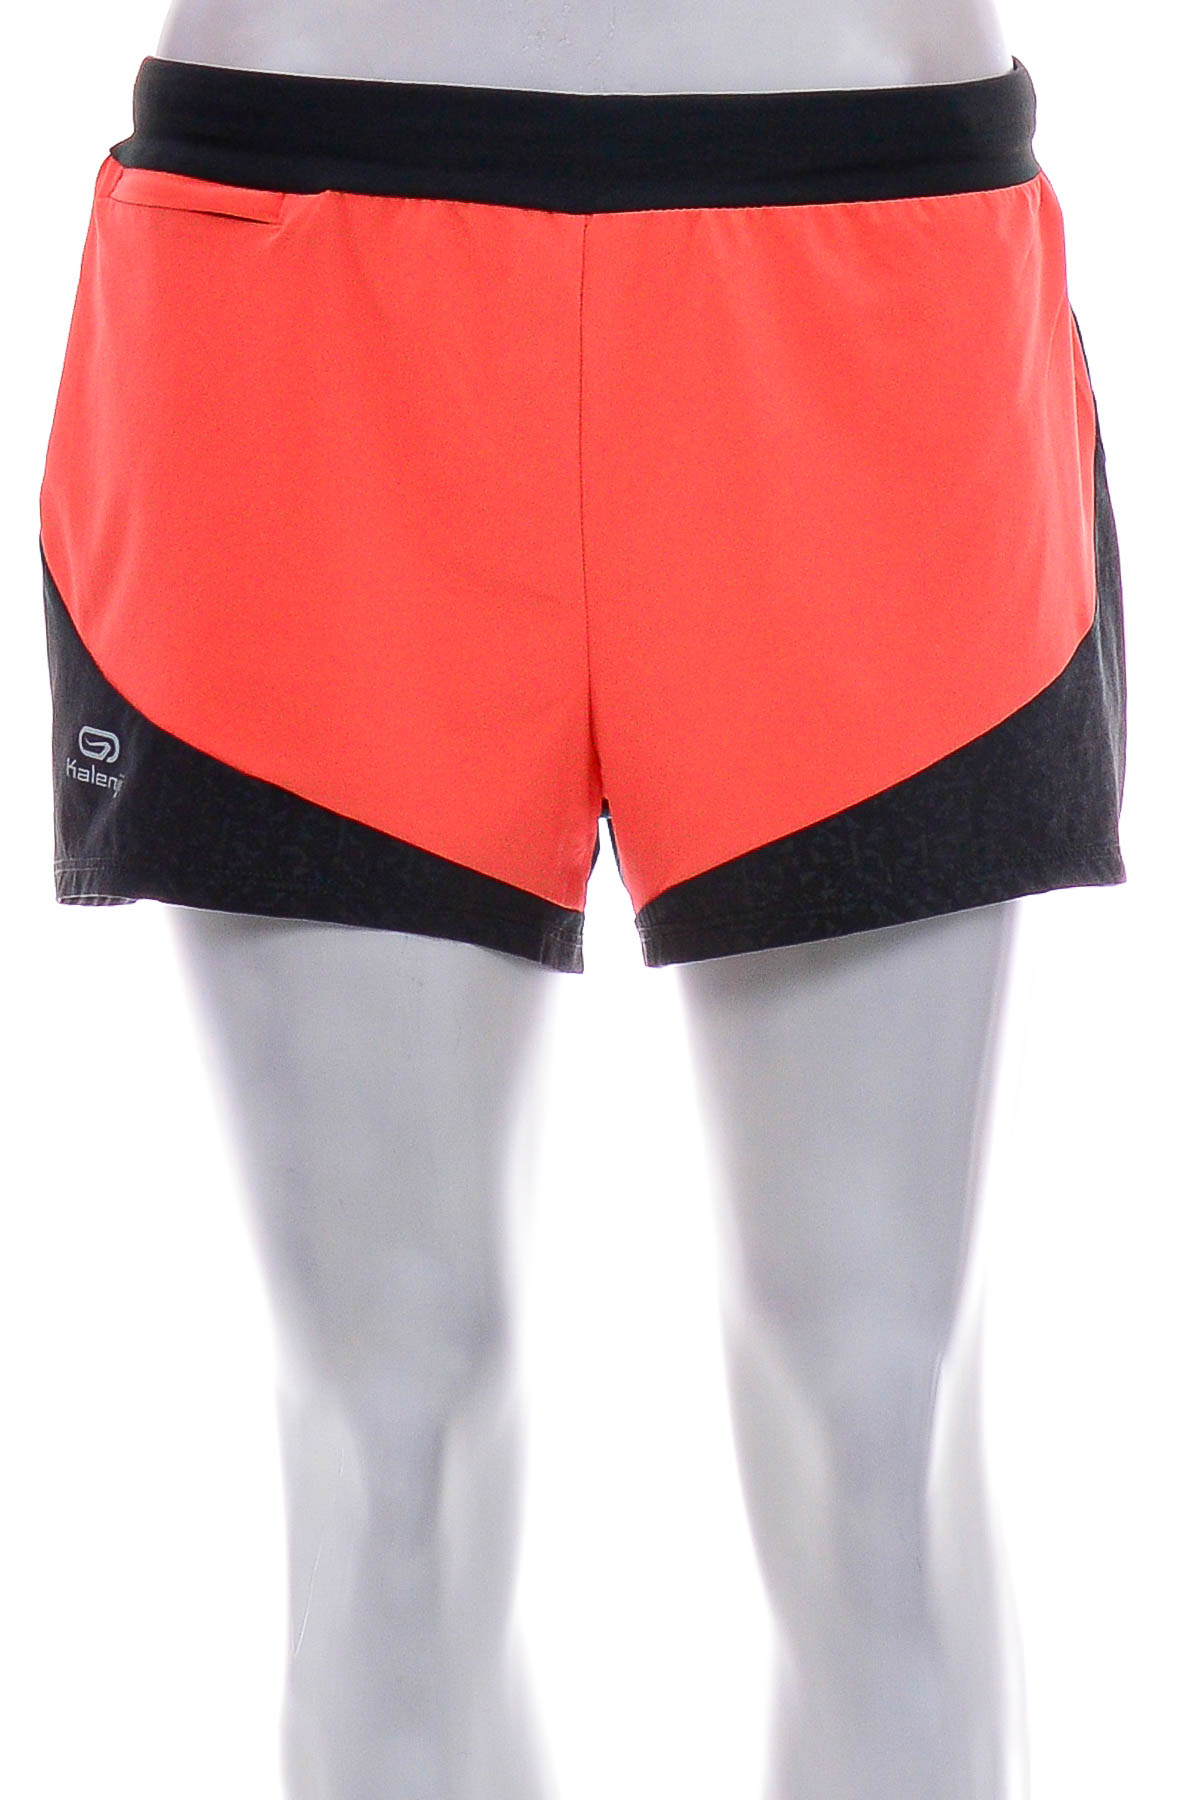 Female shorts - Oxylane - 0